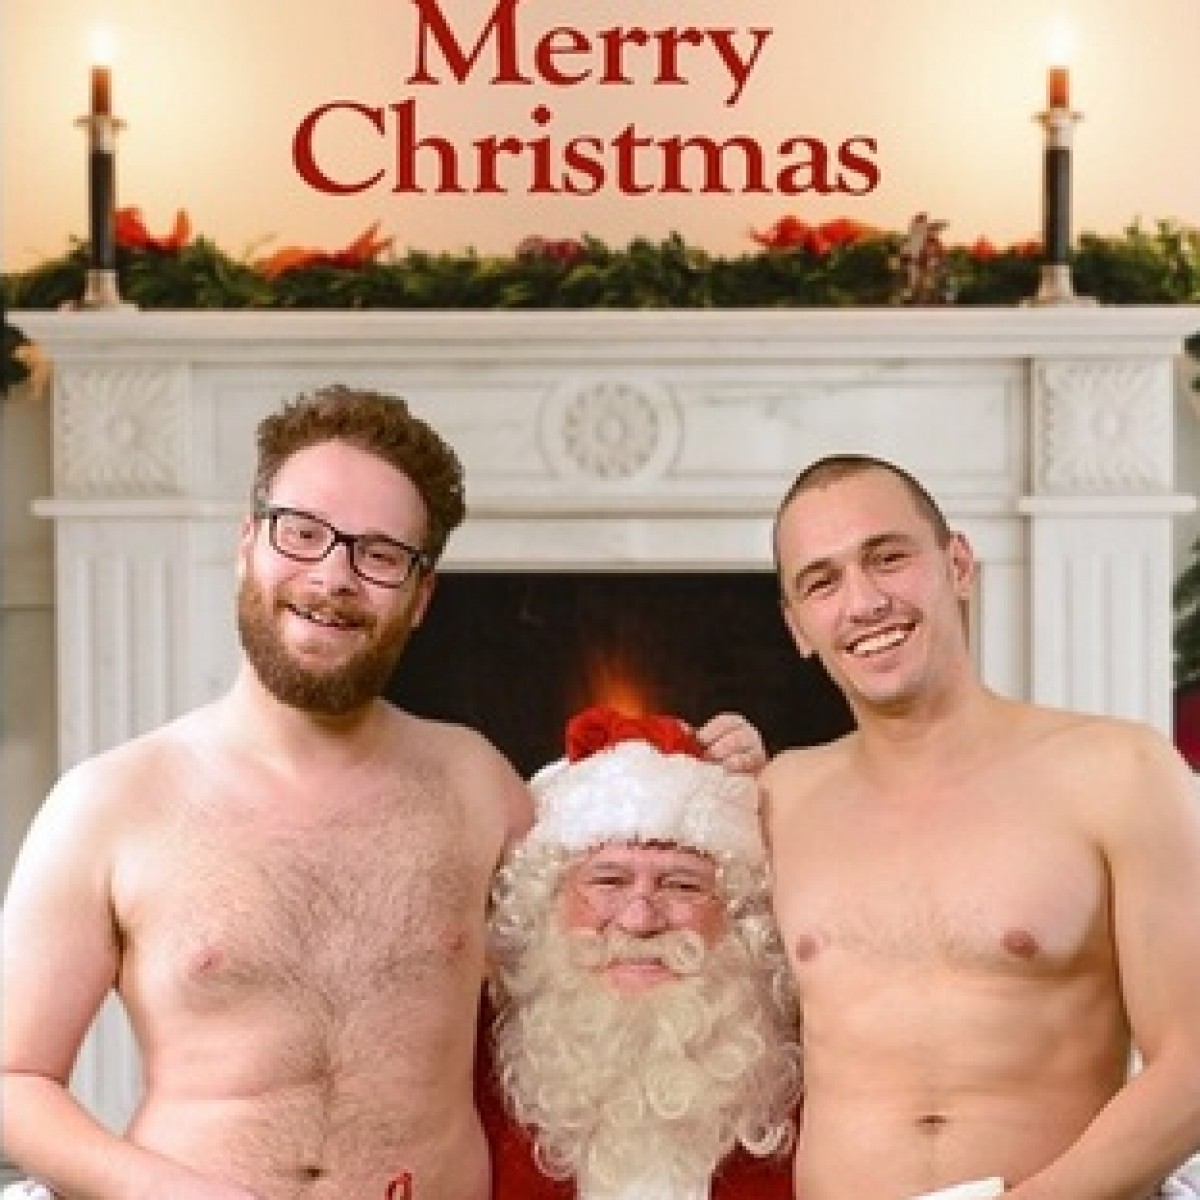 ジェームズ・フランコ、セス・ローゲンと今度は全裸でメリー・クリスマス